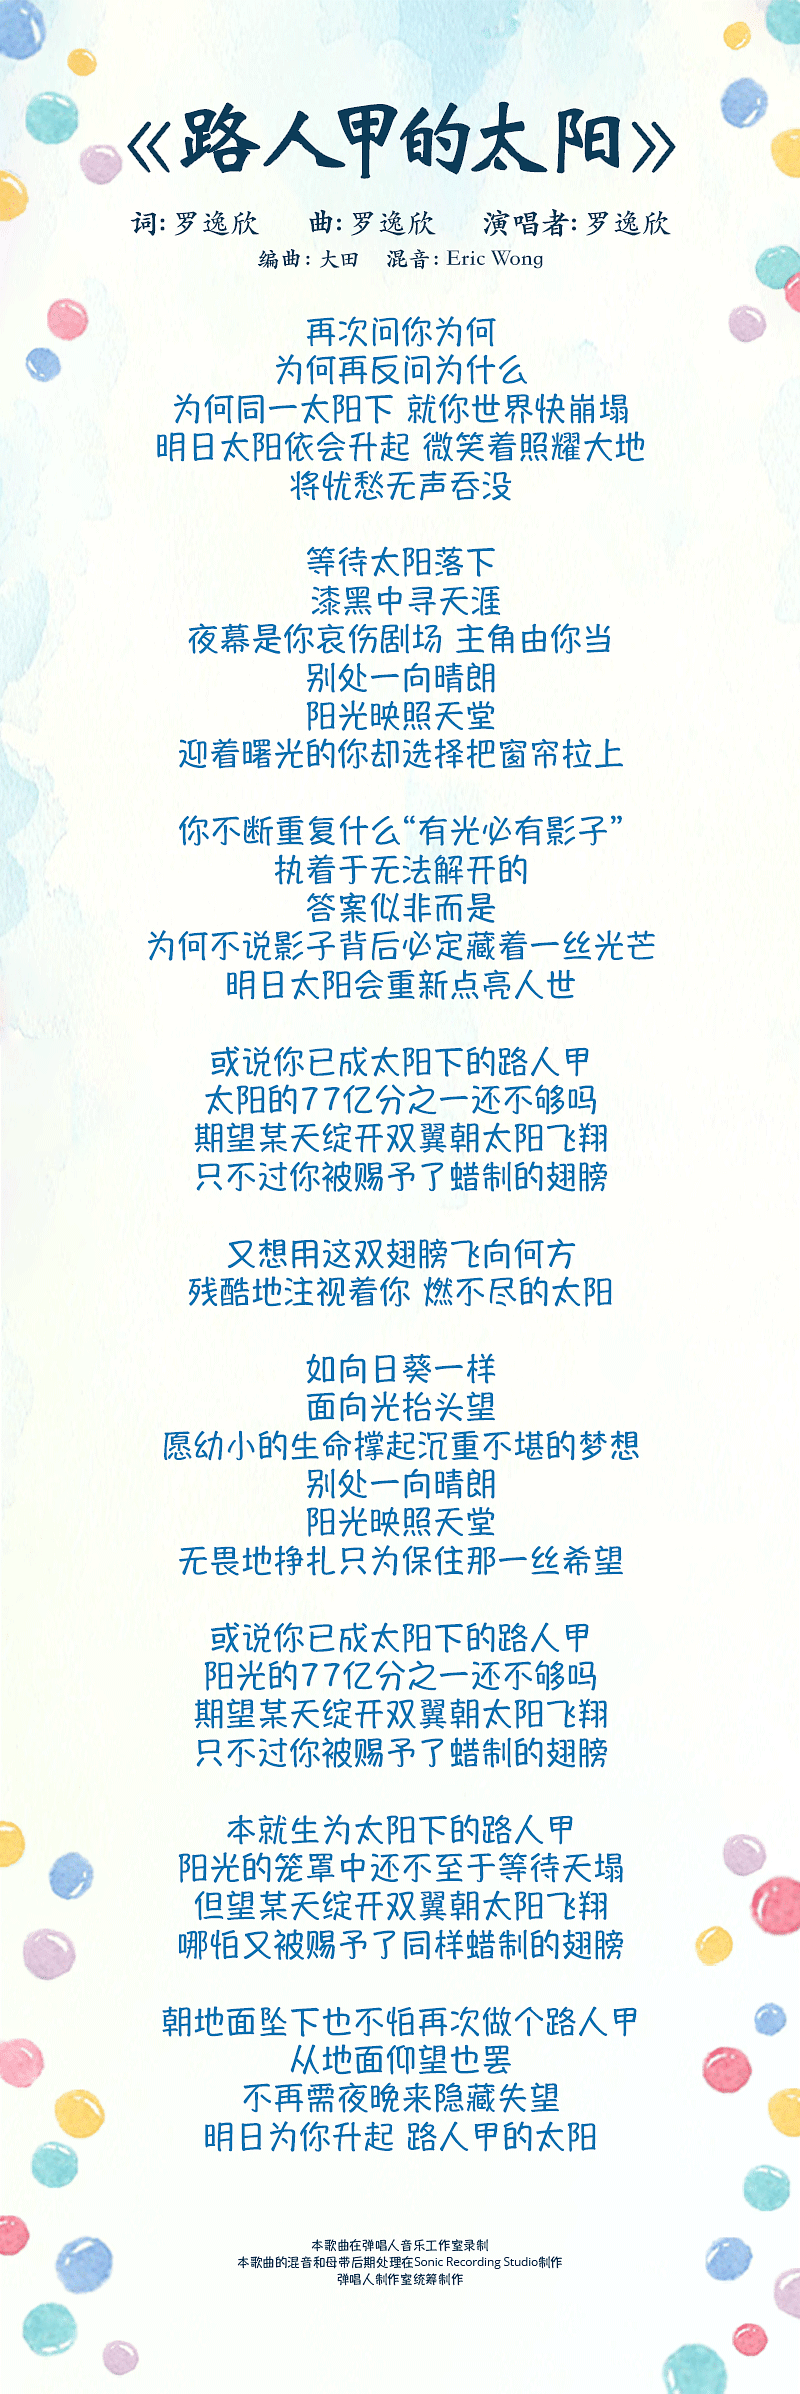 dang-chu-de-zi-ji-lyrics-mobile.png